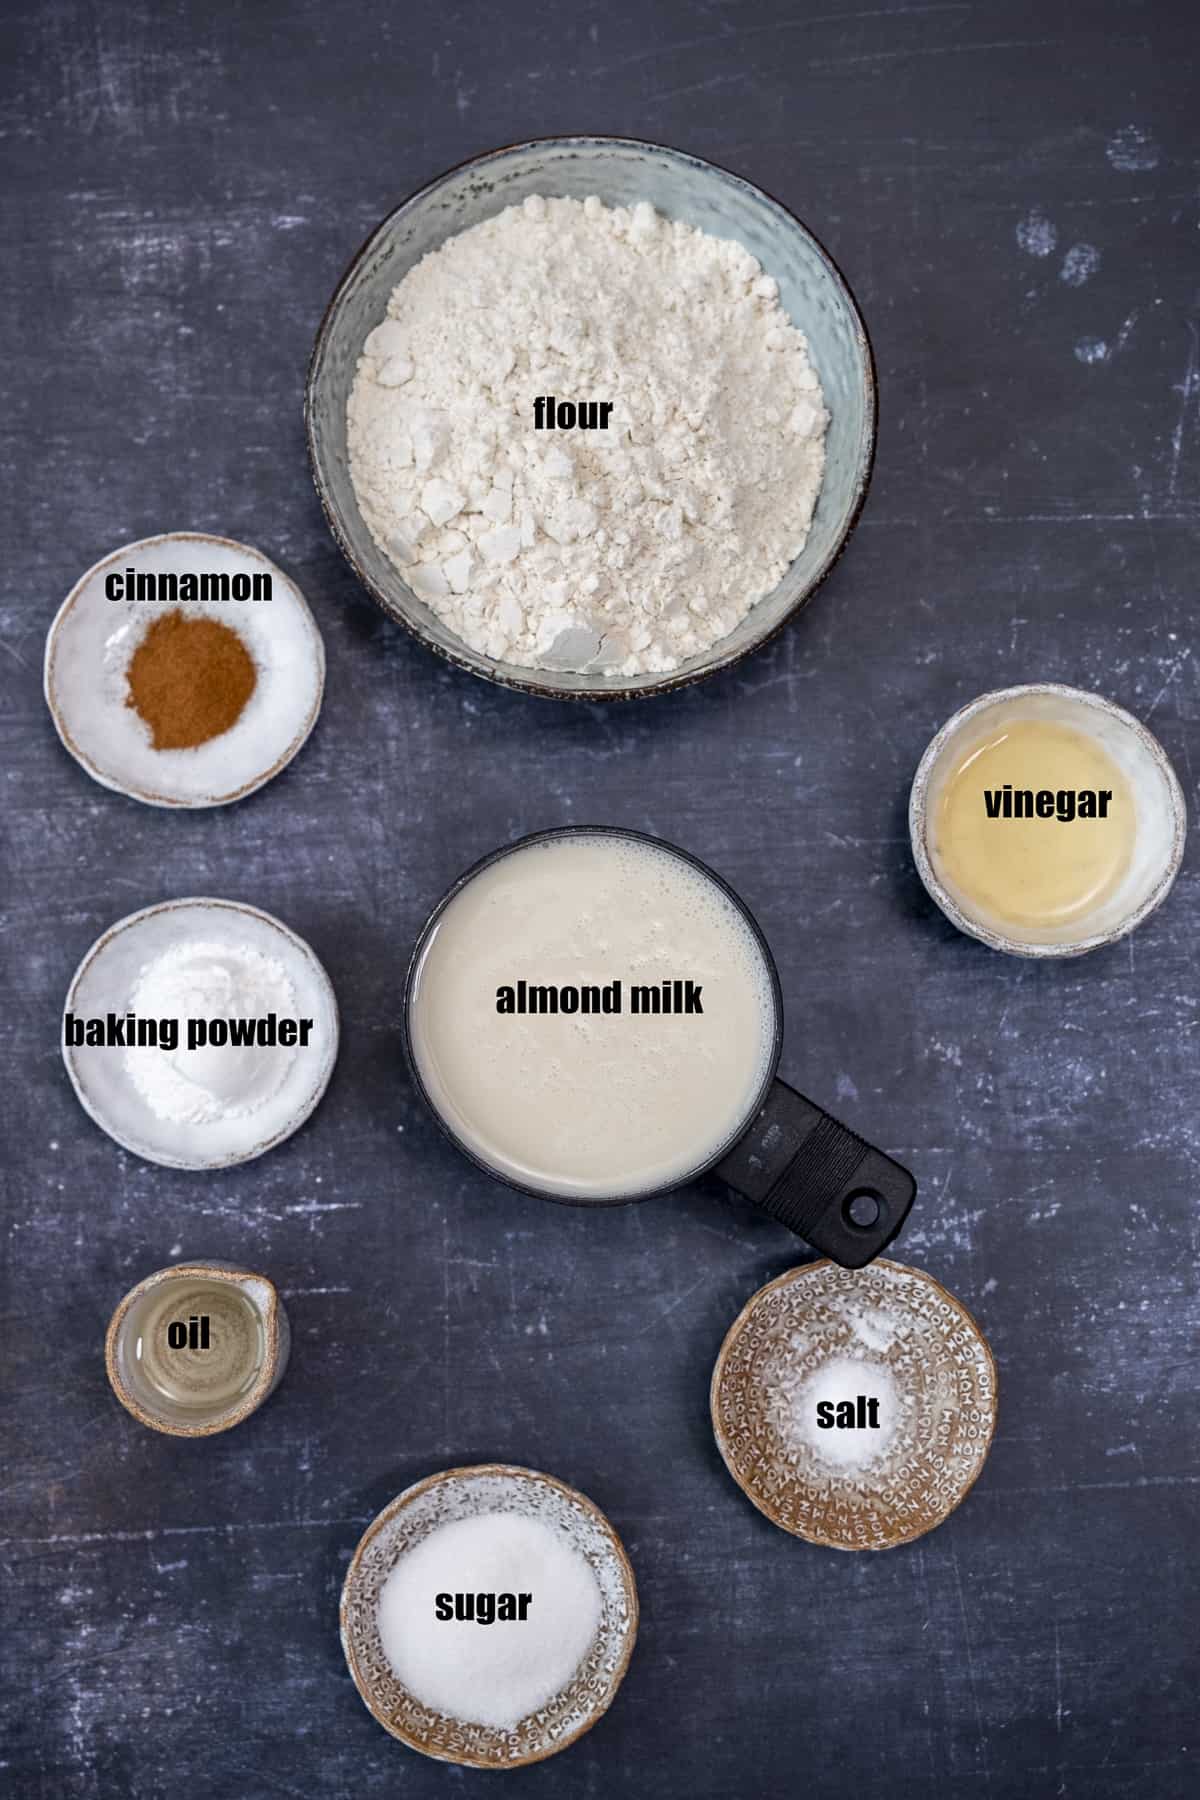 Almond milk, vinegar, oil, flour, cinnamon, sugar, salt and baking powder in separate bowls on a dark background.